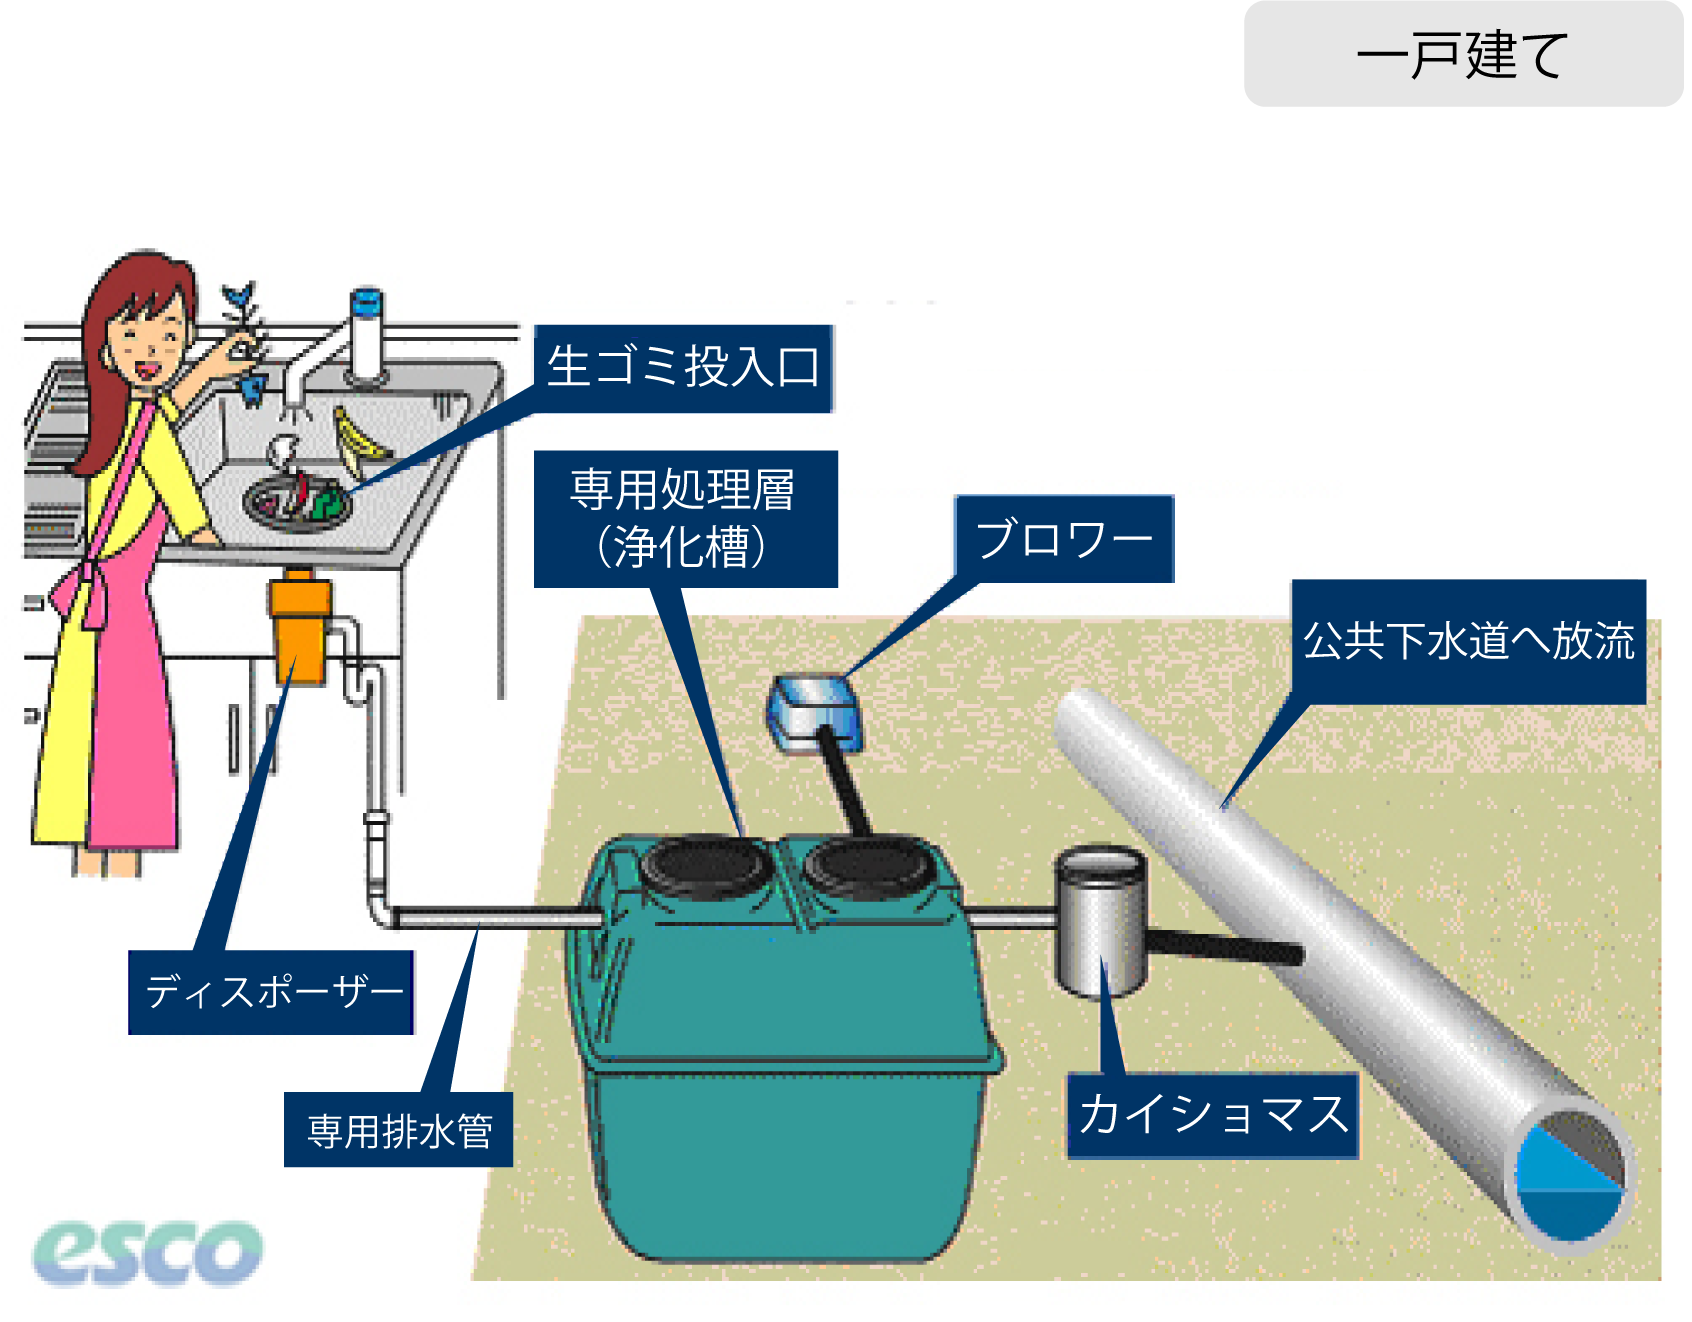 ディスポーザ排水処理システム【株式会社日本エスコ｜ディスポーザーと